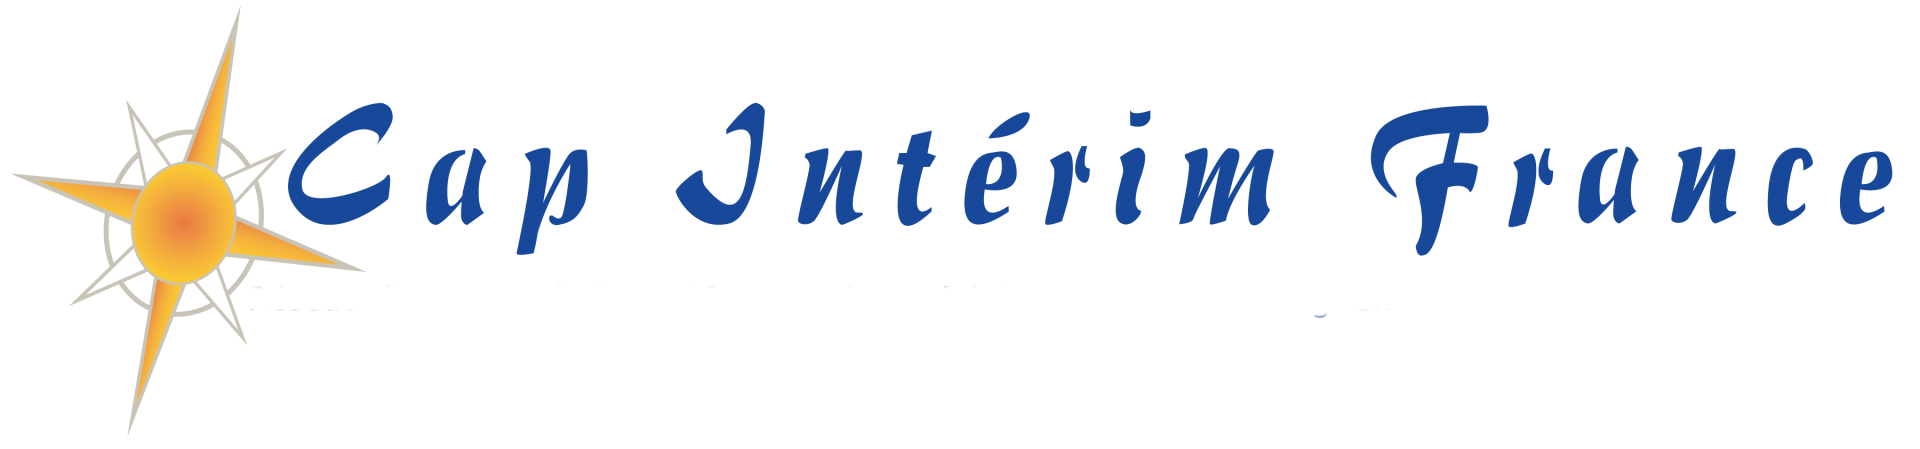 Logo cap interim 01 1